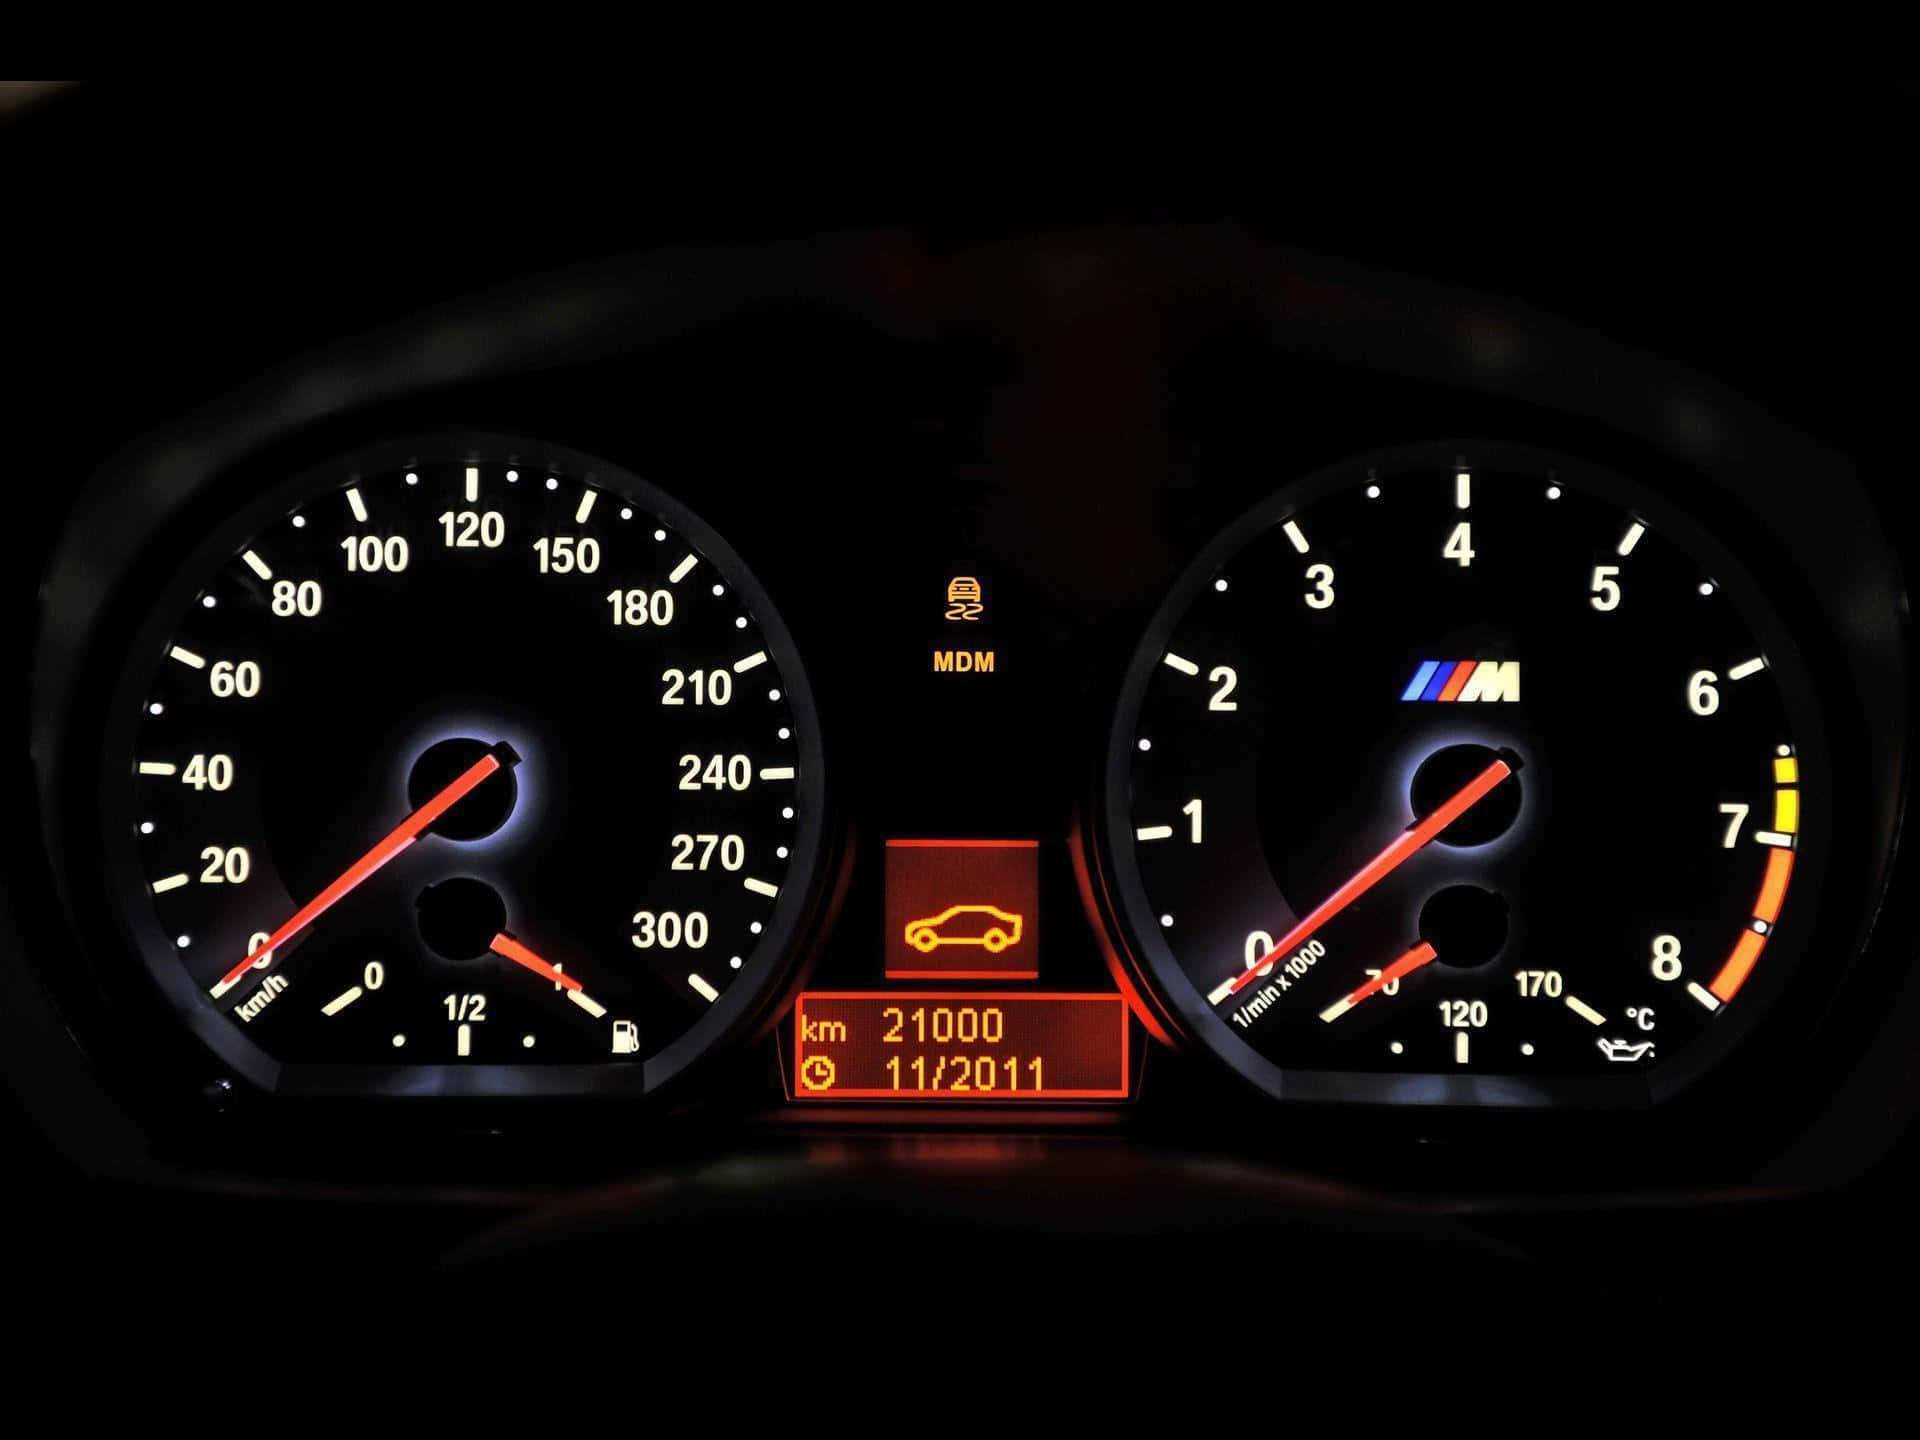 720pm-serien Bakgrundsbild Till Bmw 1-seriens Hastighetsmätare.